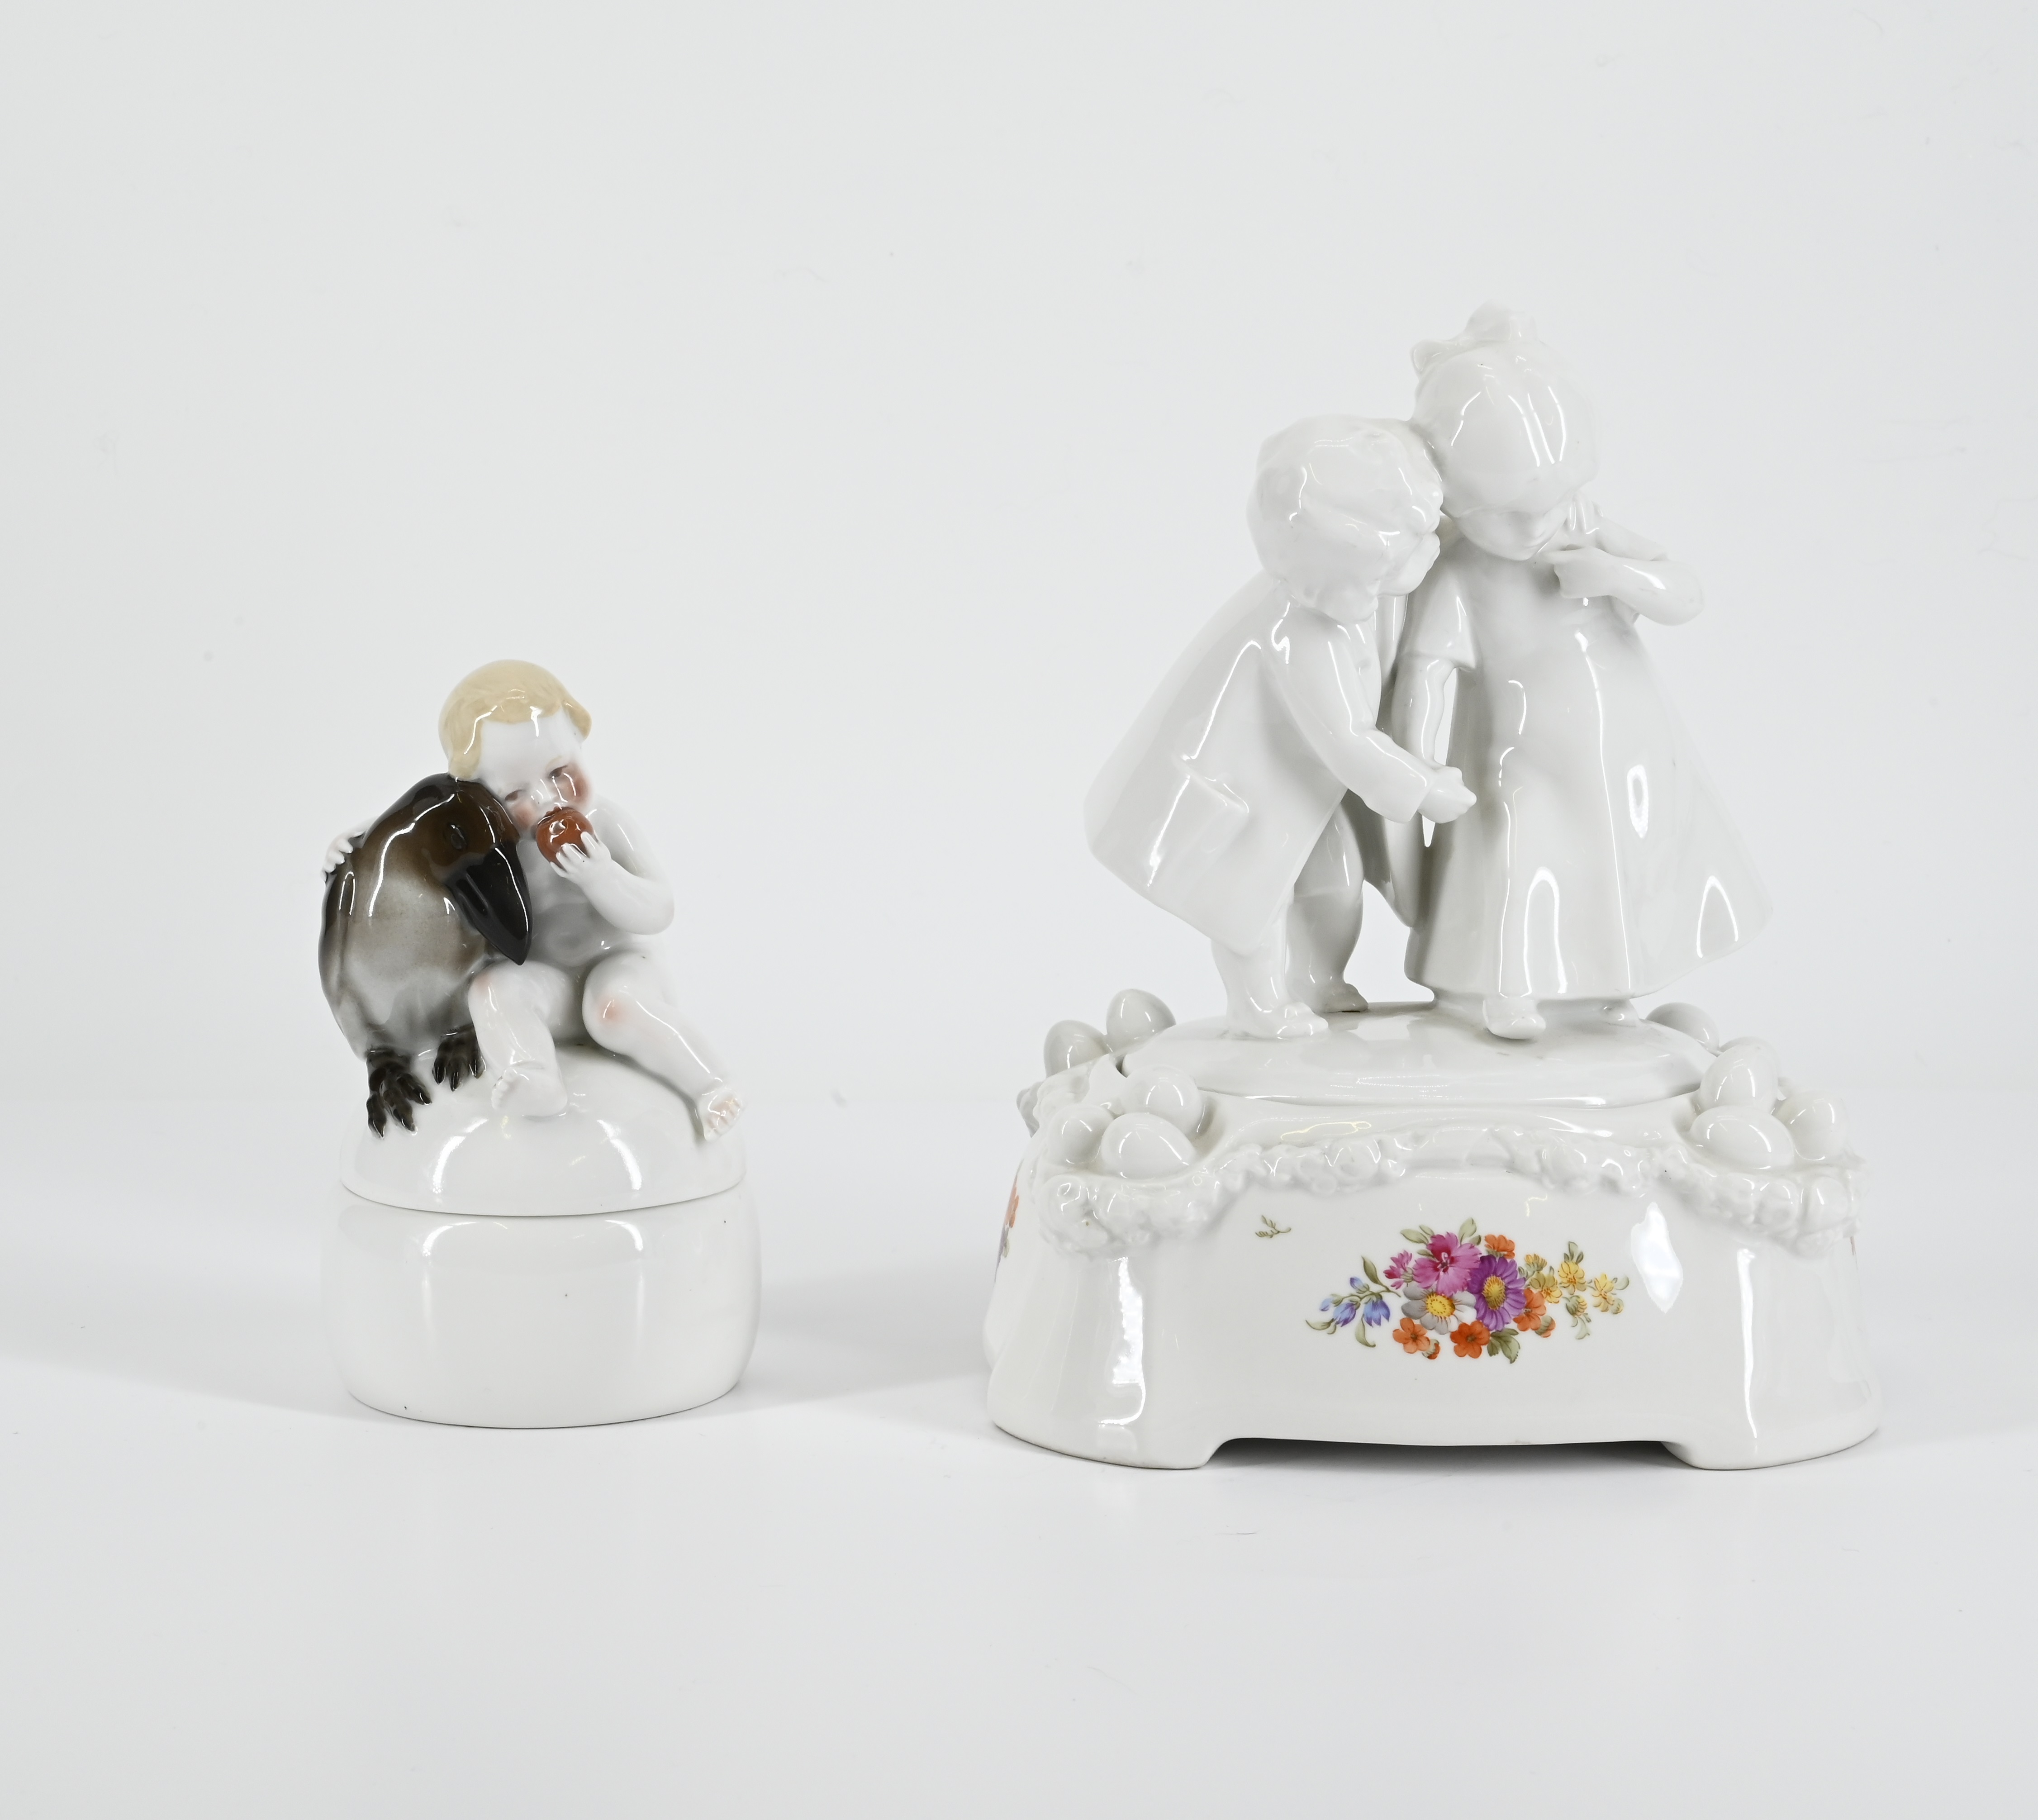 KPM - Zwei Dosen mit Kinderfiguren und Spreewaelder Kind mit Schirm, 75074-4, Van Ham Kunstauktionen